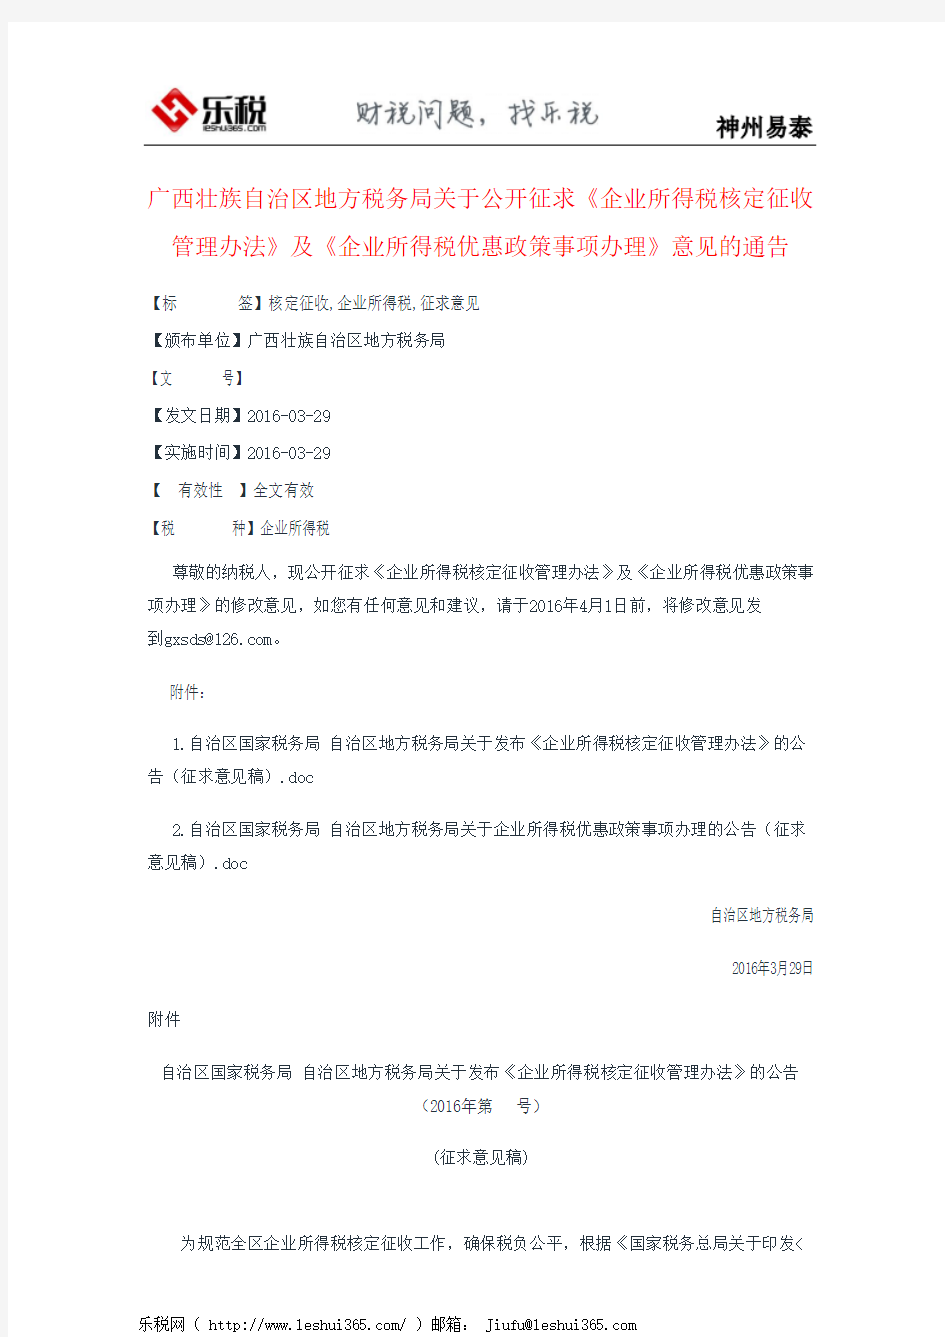 广西壮族自治区地方税务局关于公开征求《企业所得税核定征收管理